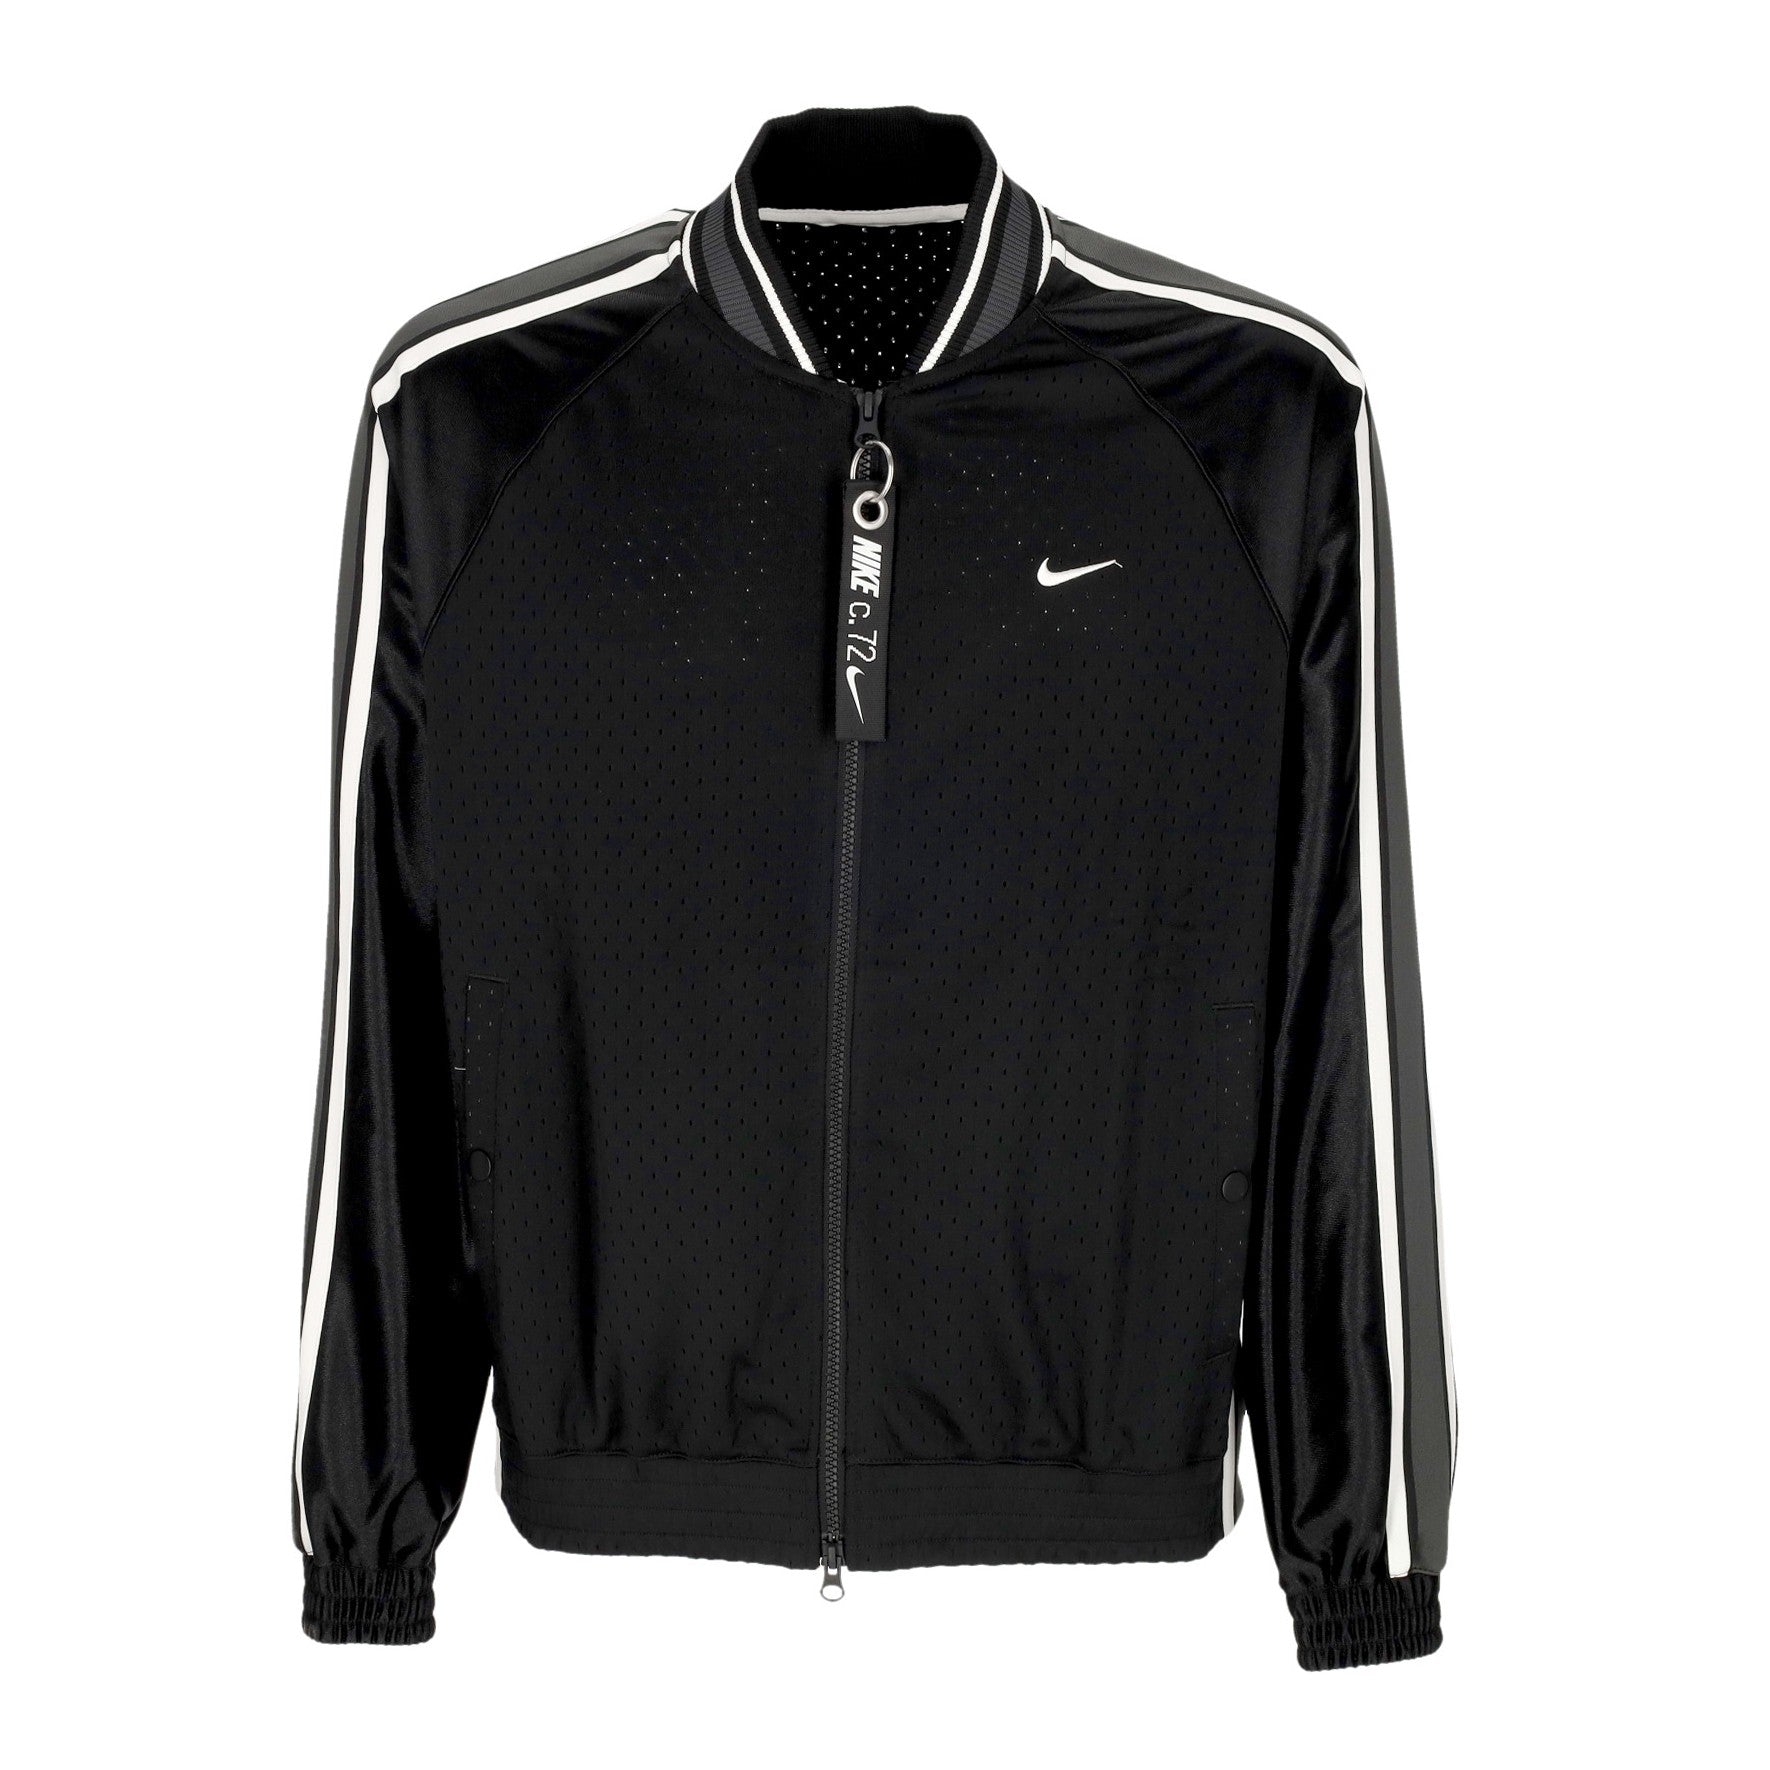 Nike, Giacca Tuta Uomo Premium Basketball Jacket, Black/black/white